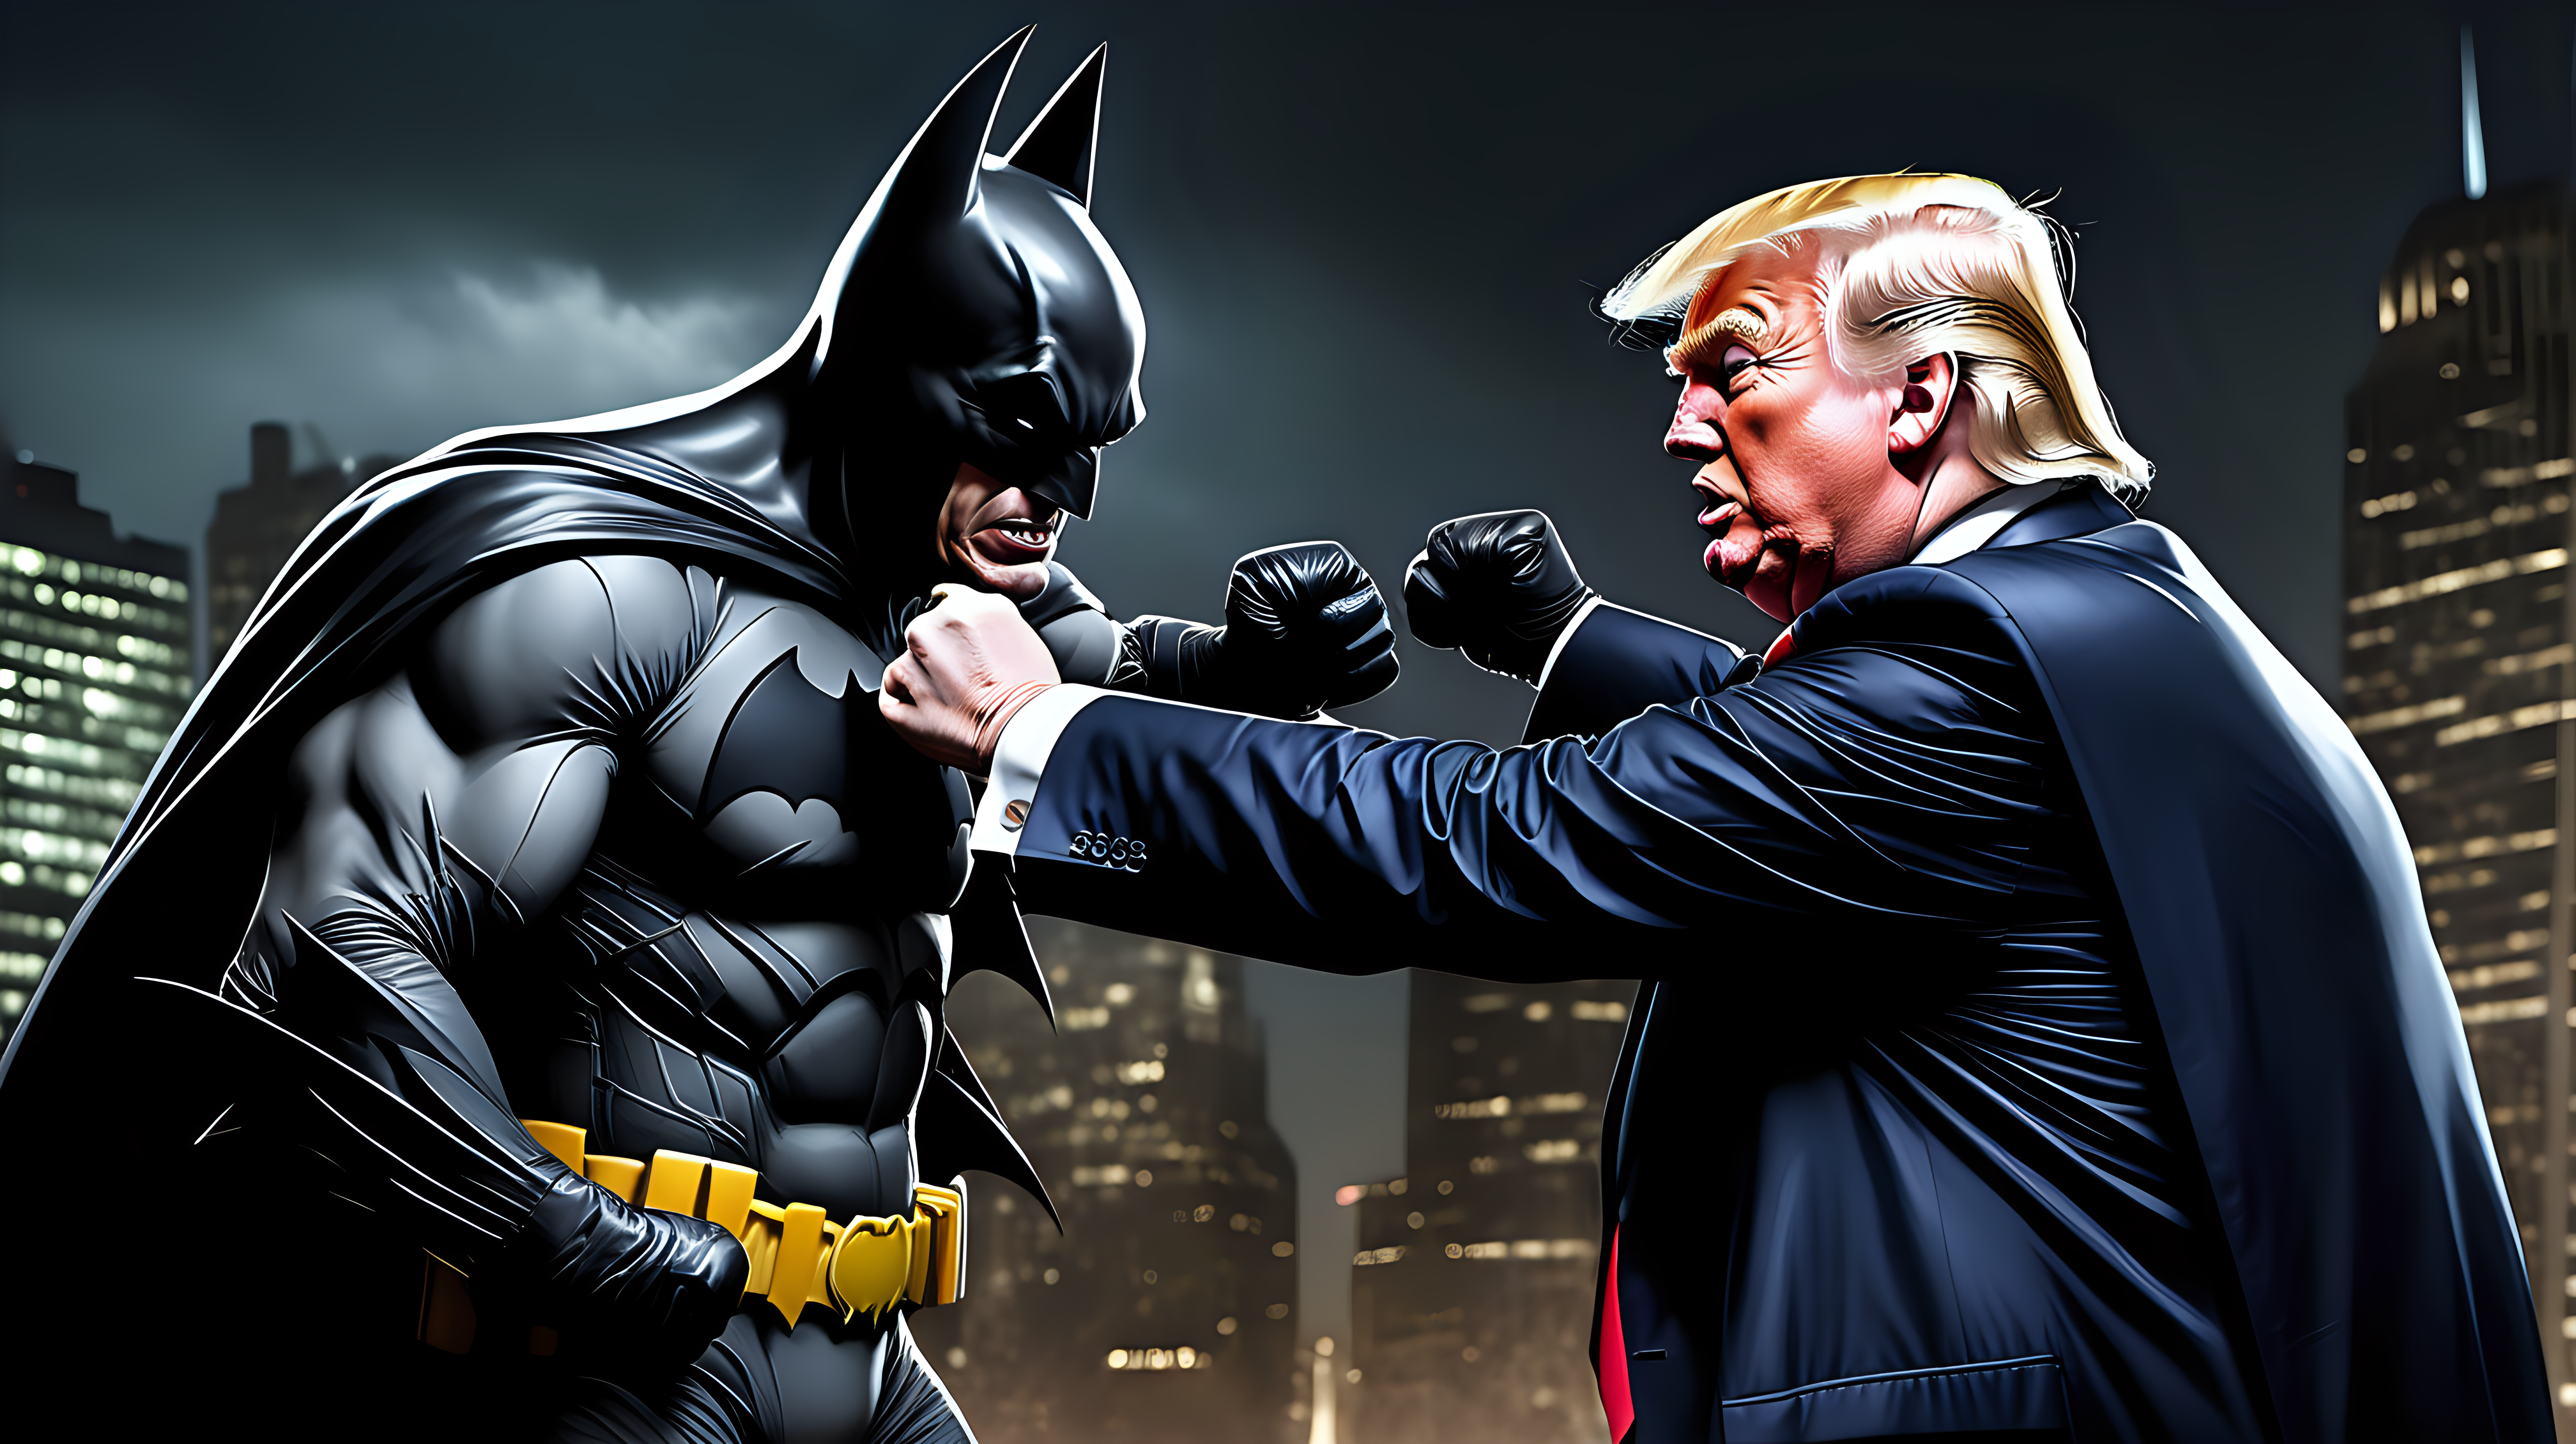 Donald Trump fights the batman